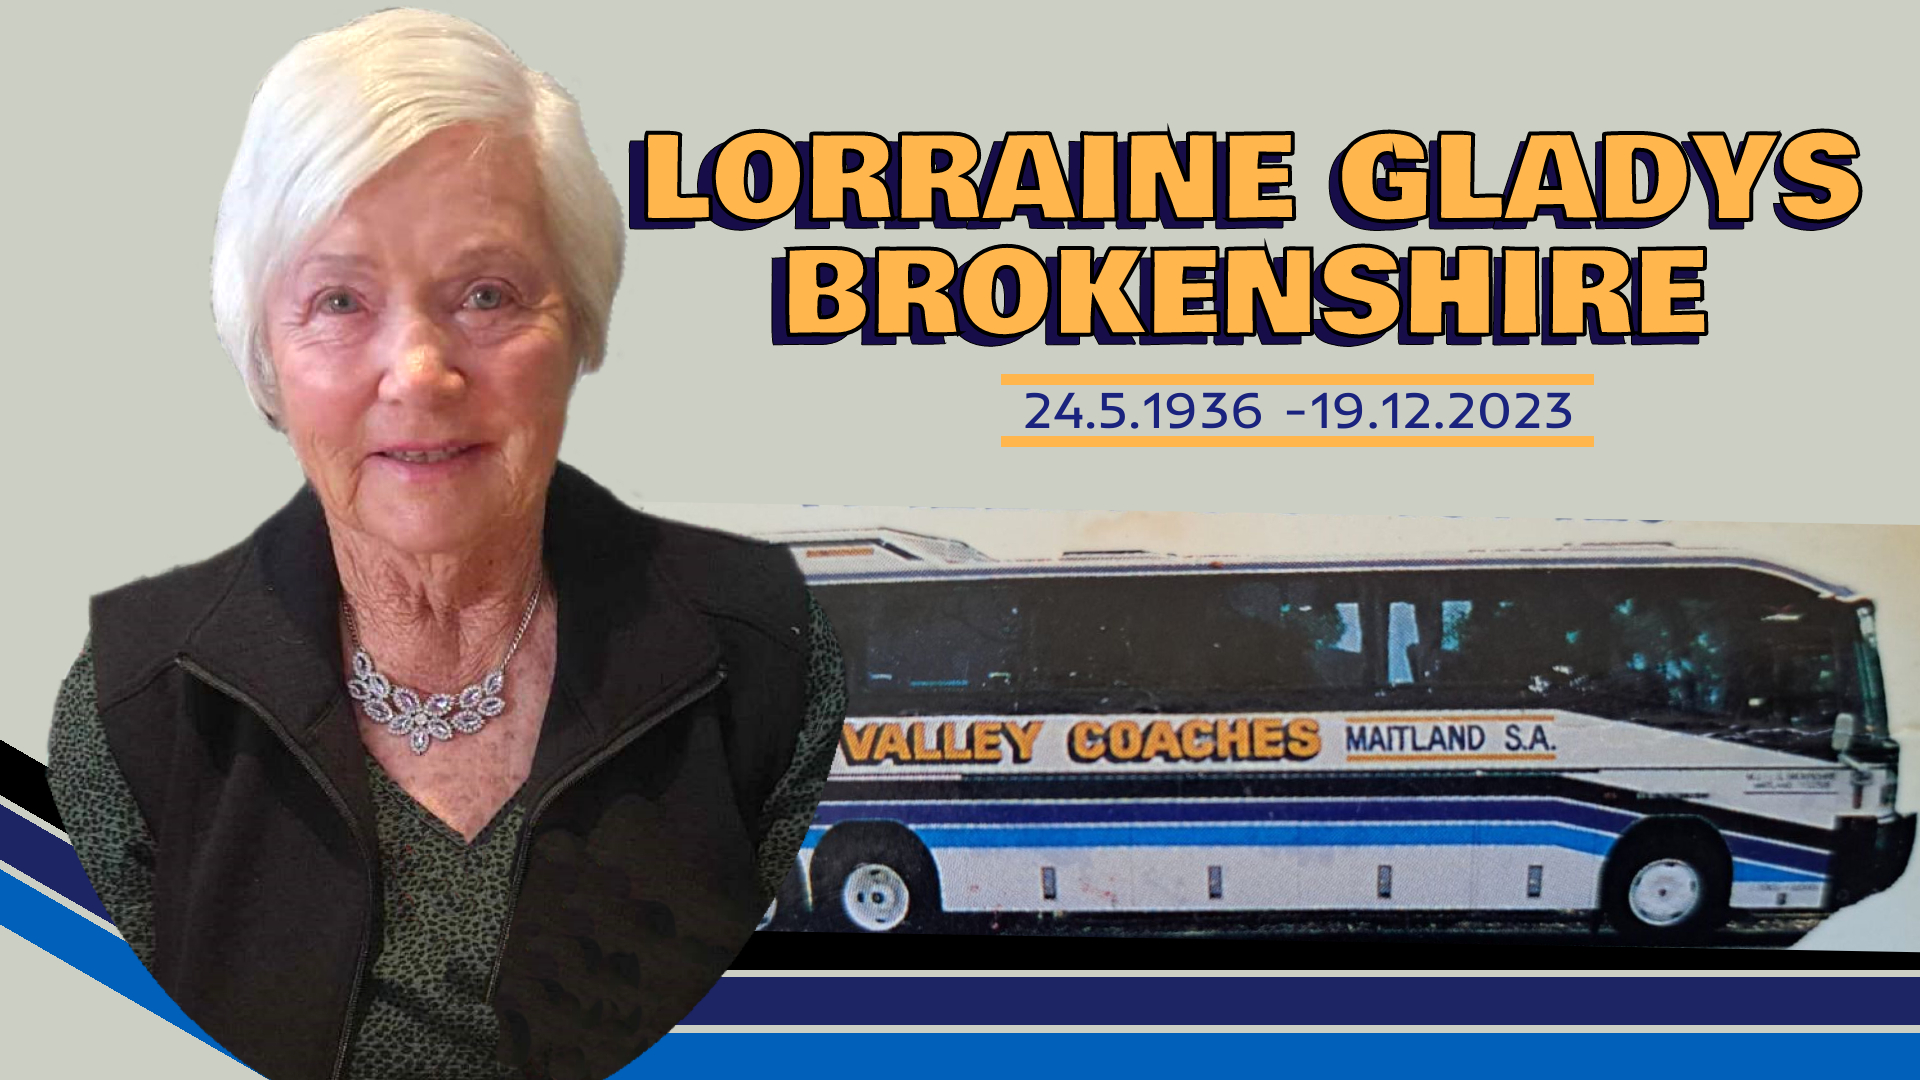 BROKENSHIRE, Lorraine Gladys